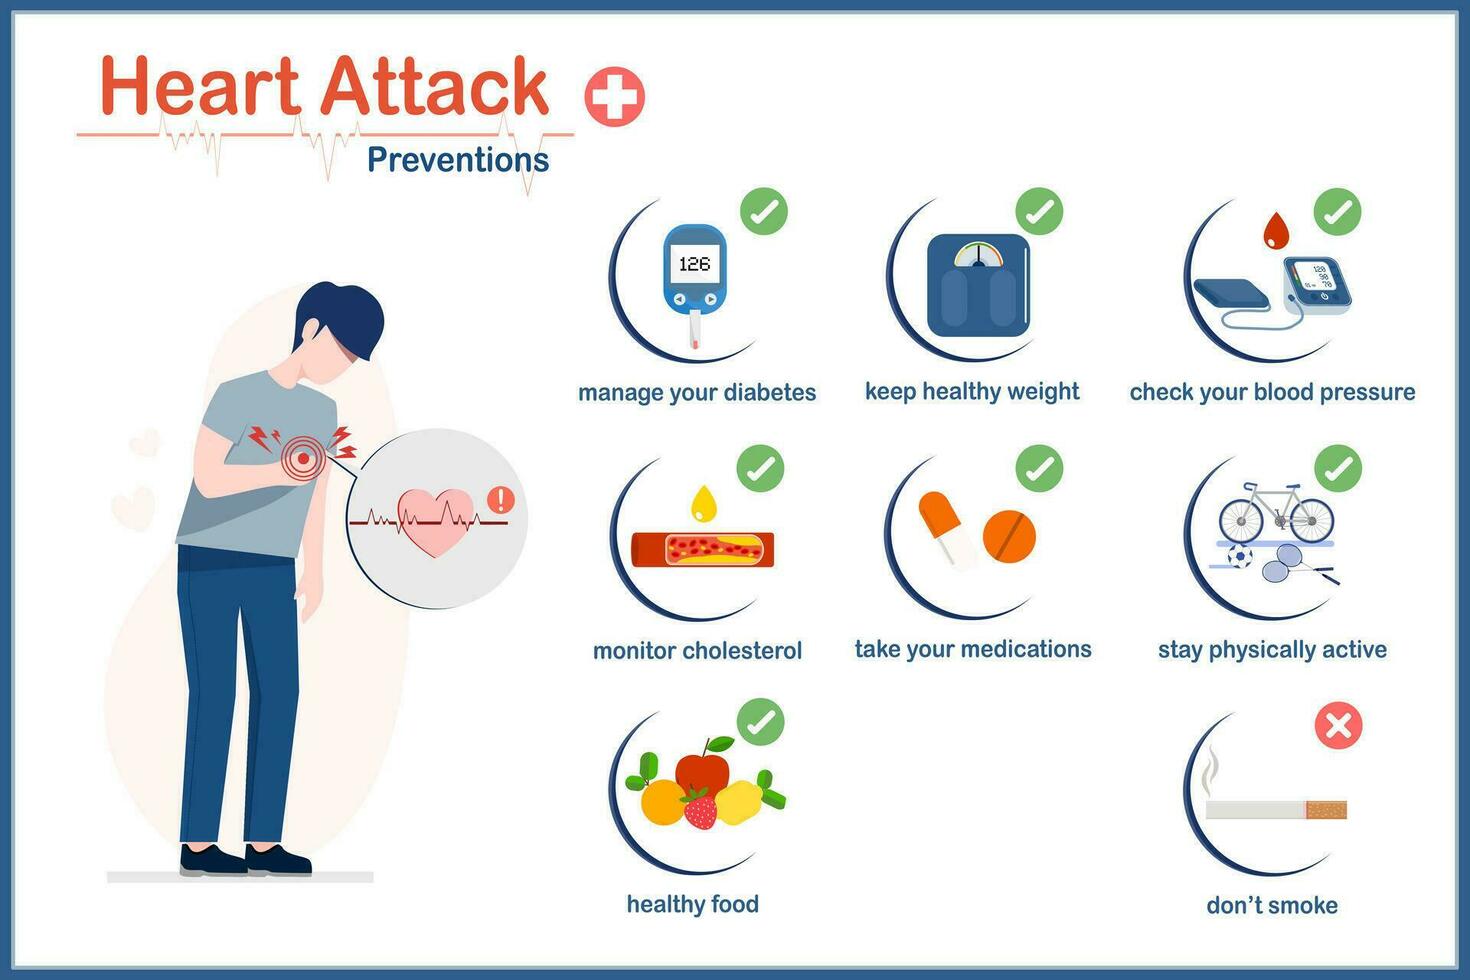 Konzepte von verhindern Herz Krankheit, nicht Rauchen, Sport treiben regelmäßig, nahrhaft Essen, regelmäßig Überwachung Blut Zucker Ebenen.Cholesterin und Blut Druck Messungen und Rezept Medikamente vektor